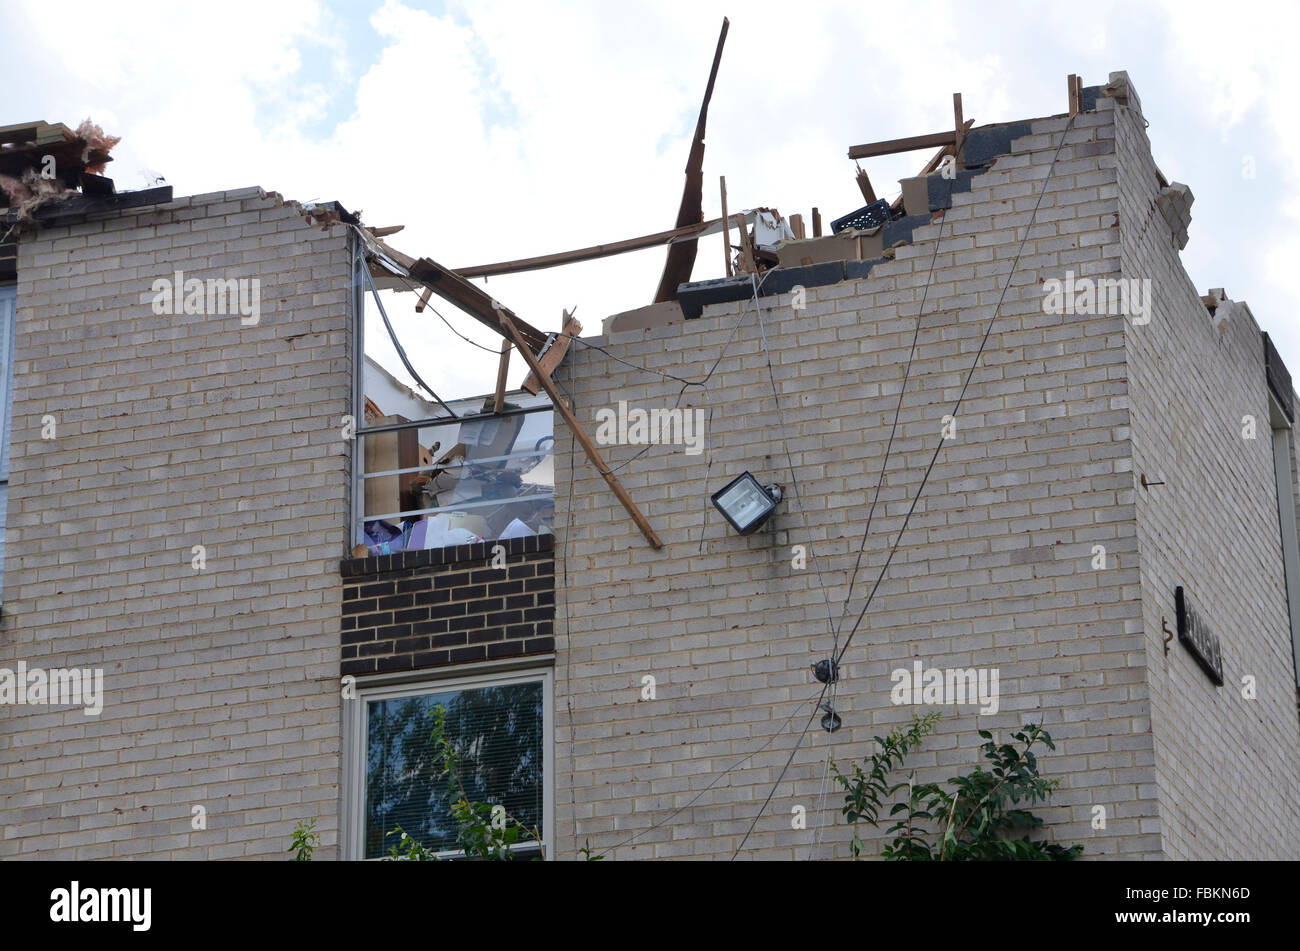 Daños alsistema el techo de un edificio de apartamentos después de una fuerte tormenta en Bladensburg, Maryland Foto de stock